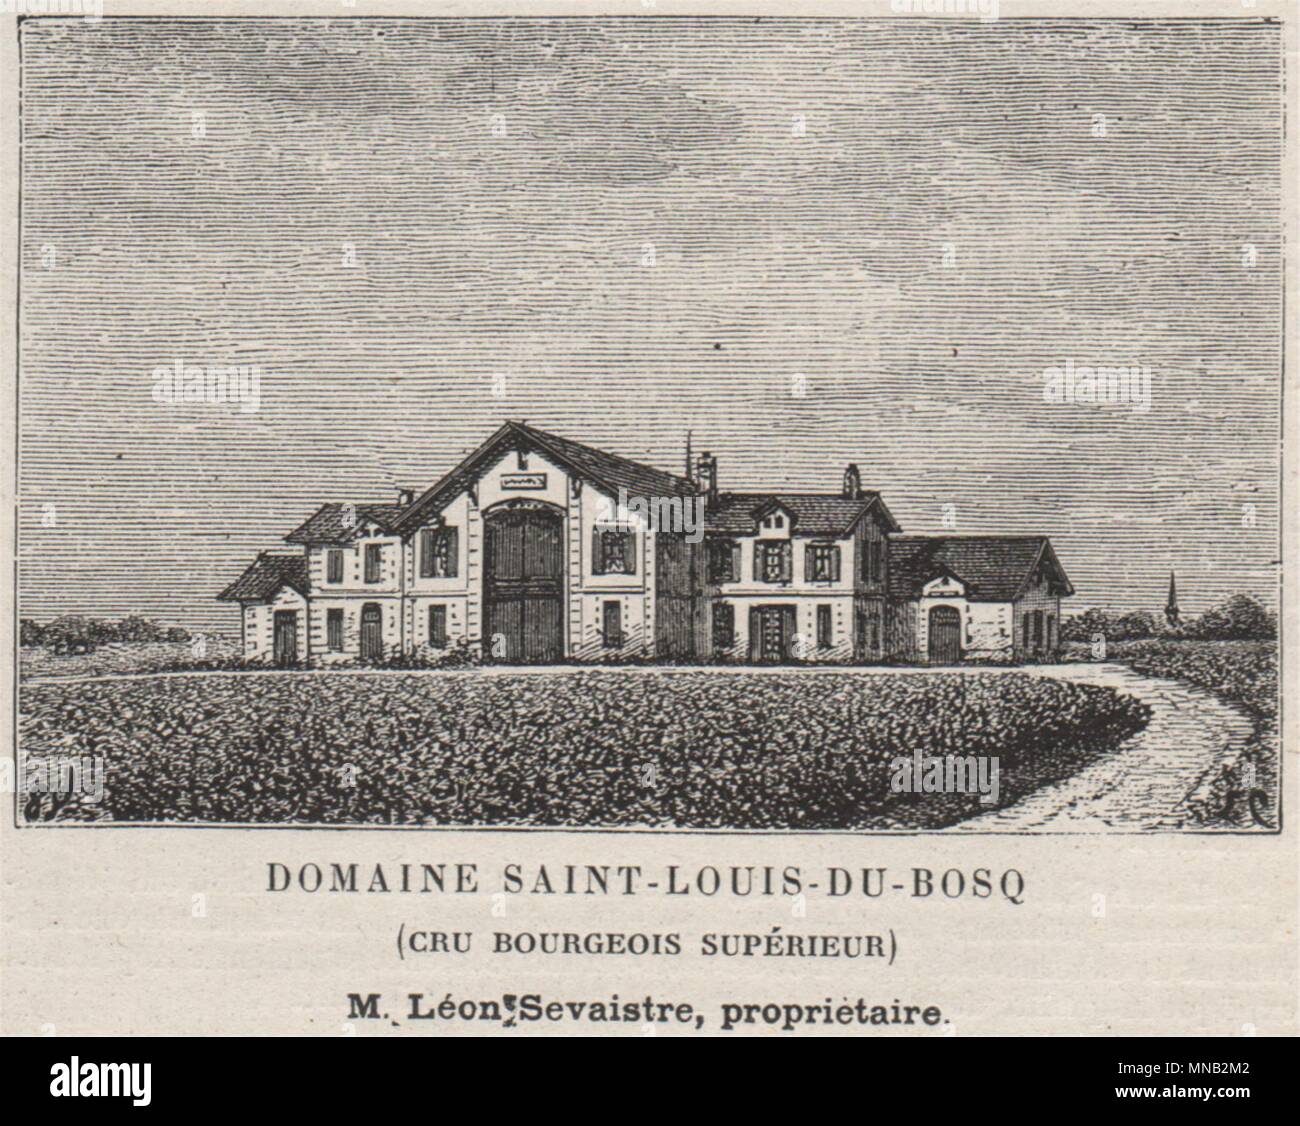 MÉDOC SAINT-JULIEN Domaine St-Louis-du-Bosq Cru Bourgeois Supérieur SMALL 1908 Stock Photo